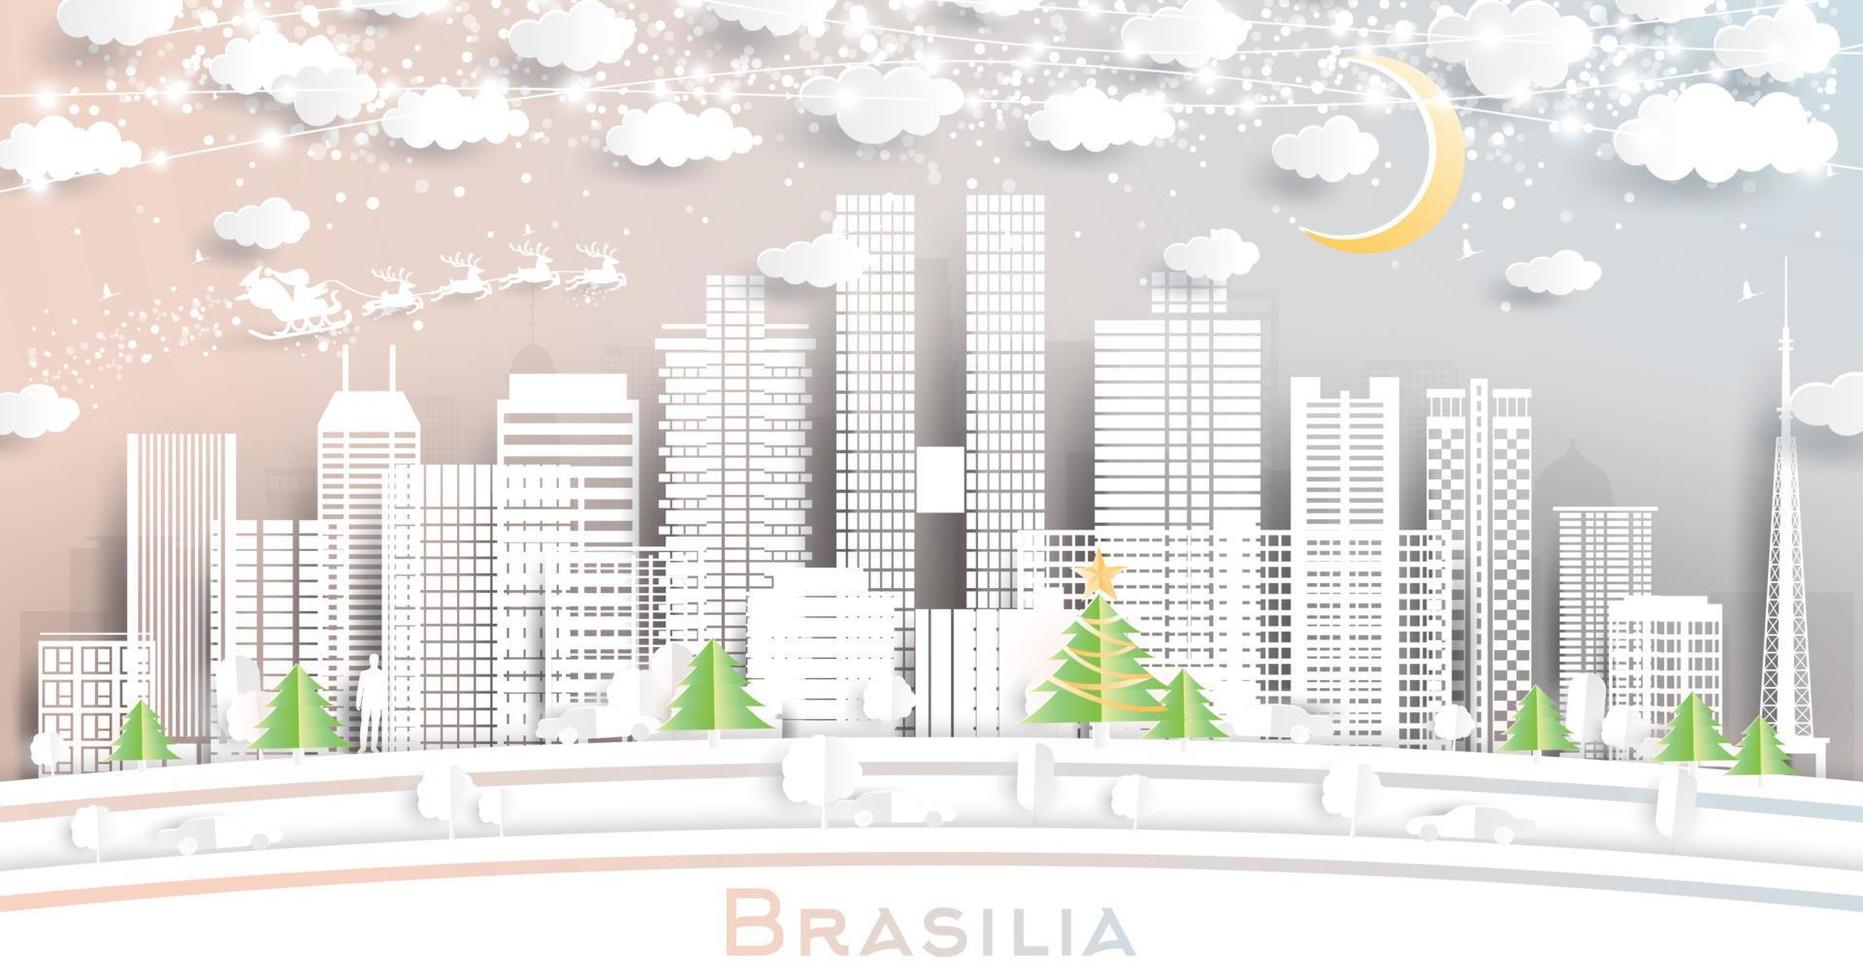 Brasilia Brazilië stad horizon in papier besnoeiing stijl met sneeuwvlokken, maan en neon guirlande. vector